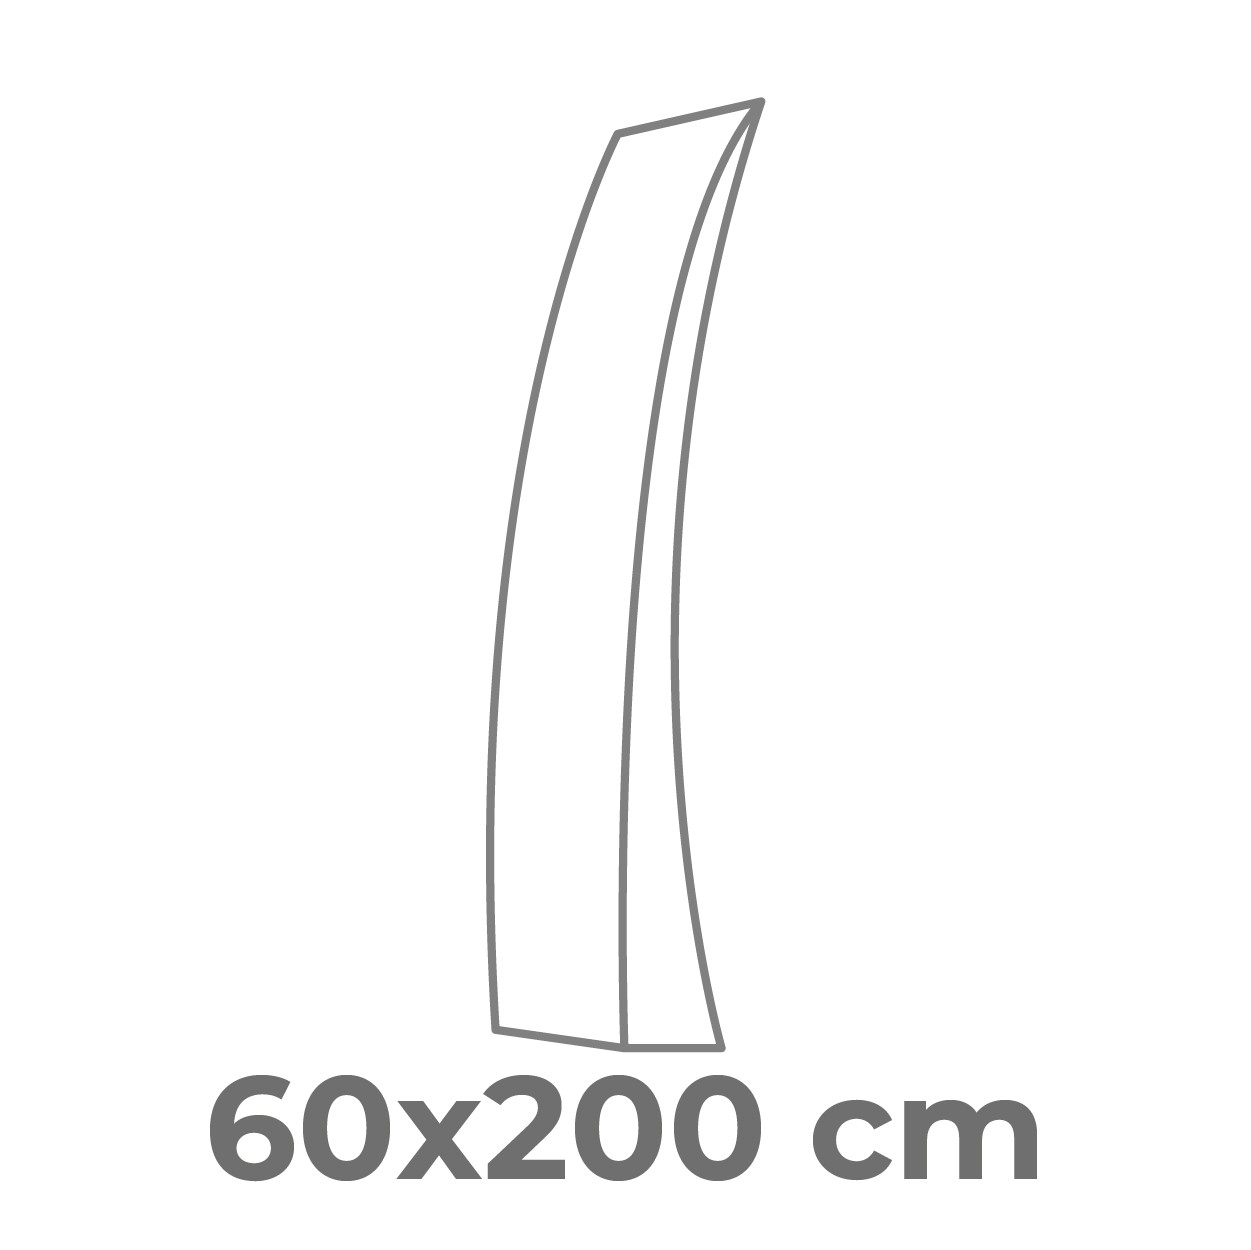 60x200 cm